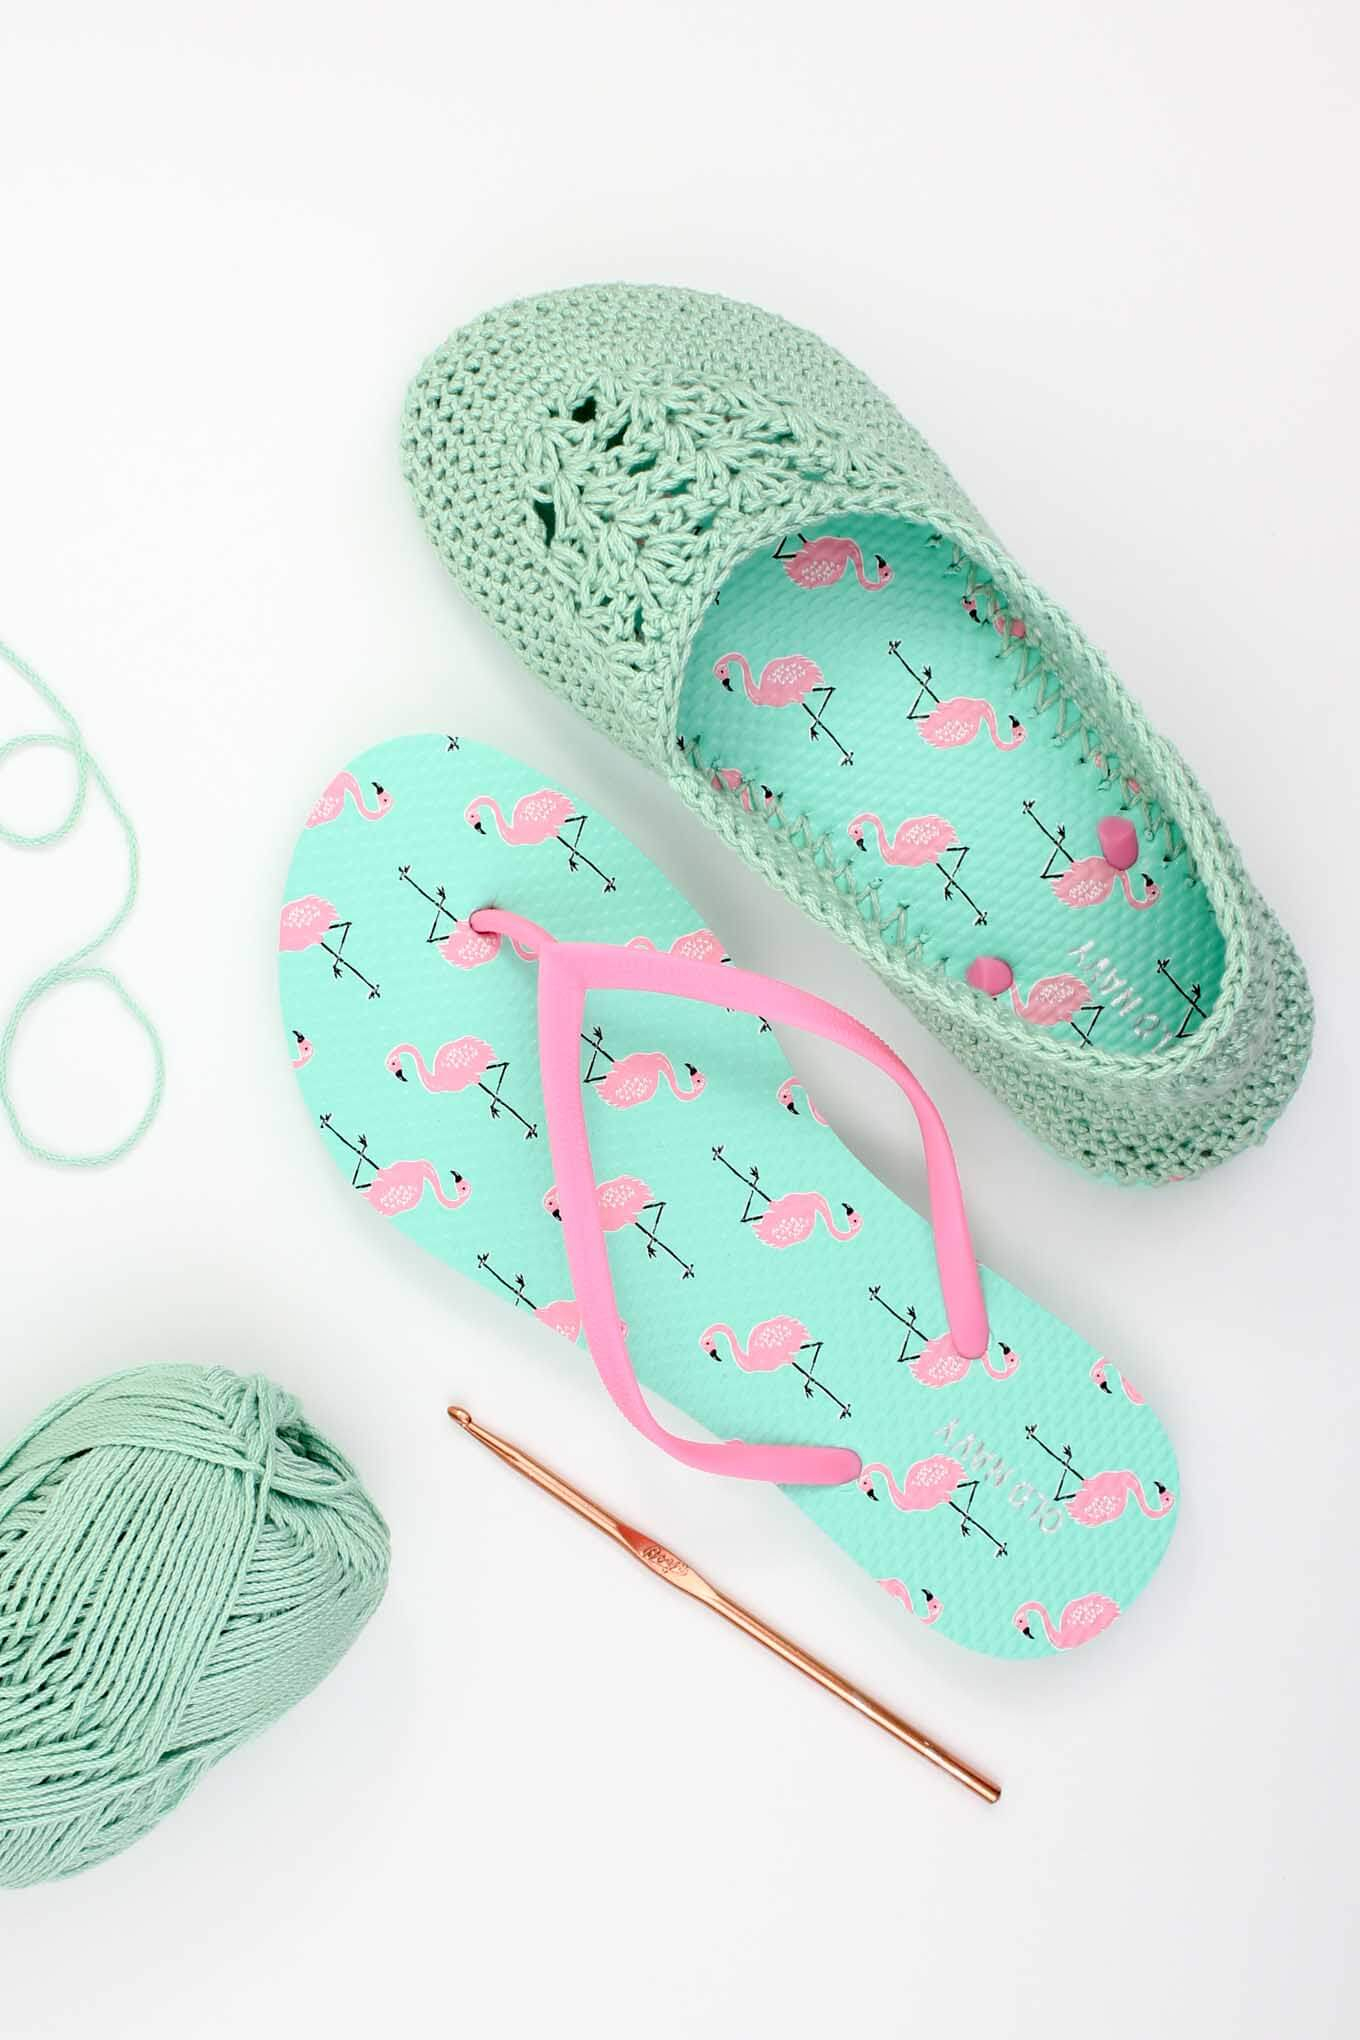 Crochet Sneakers Pattern Crochet Slippers With Flip Flop Soles Free Pattern Video Tutorial